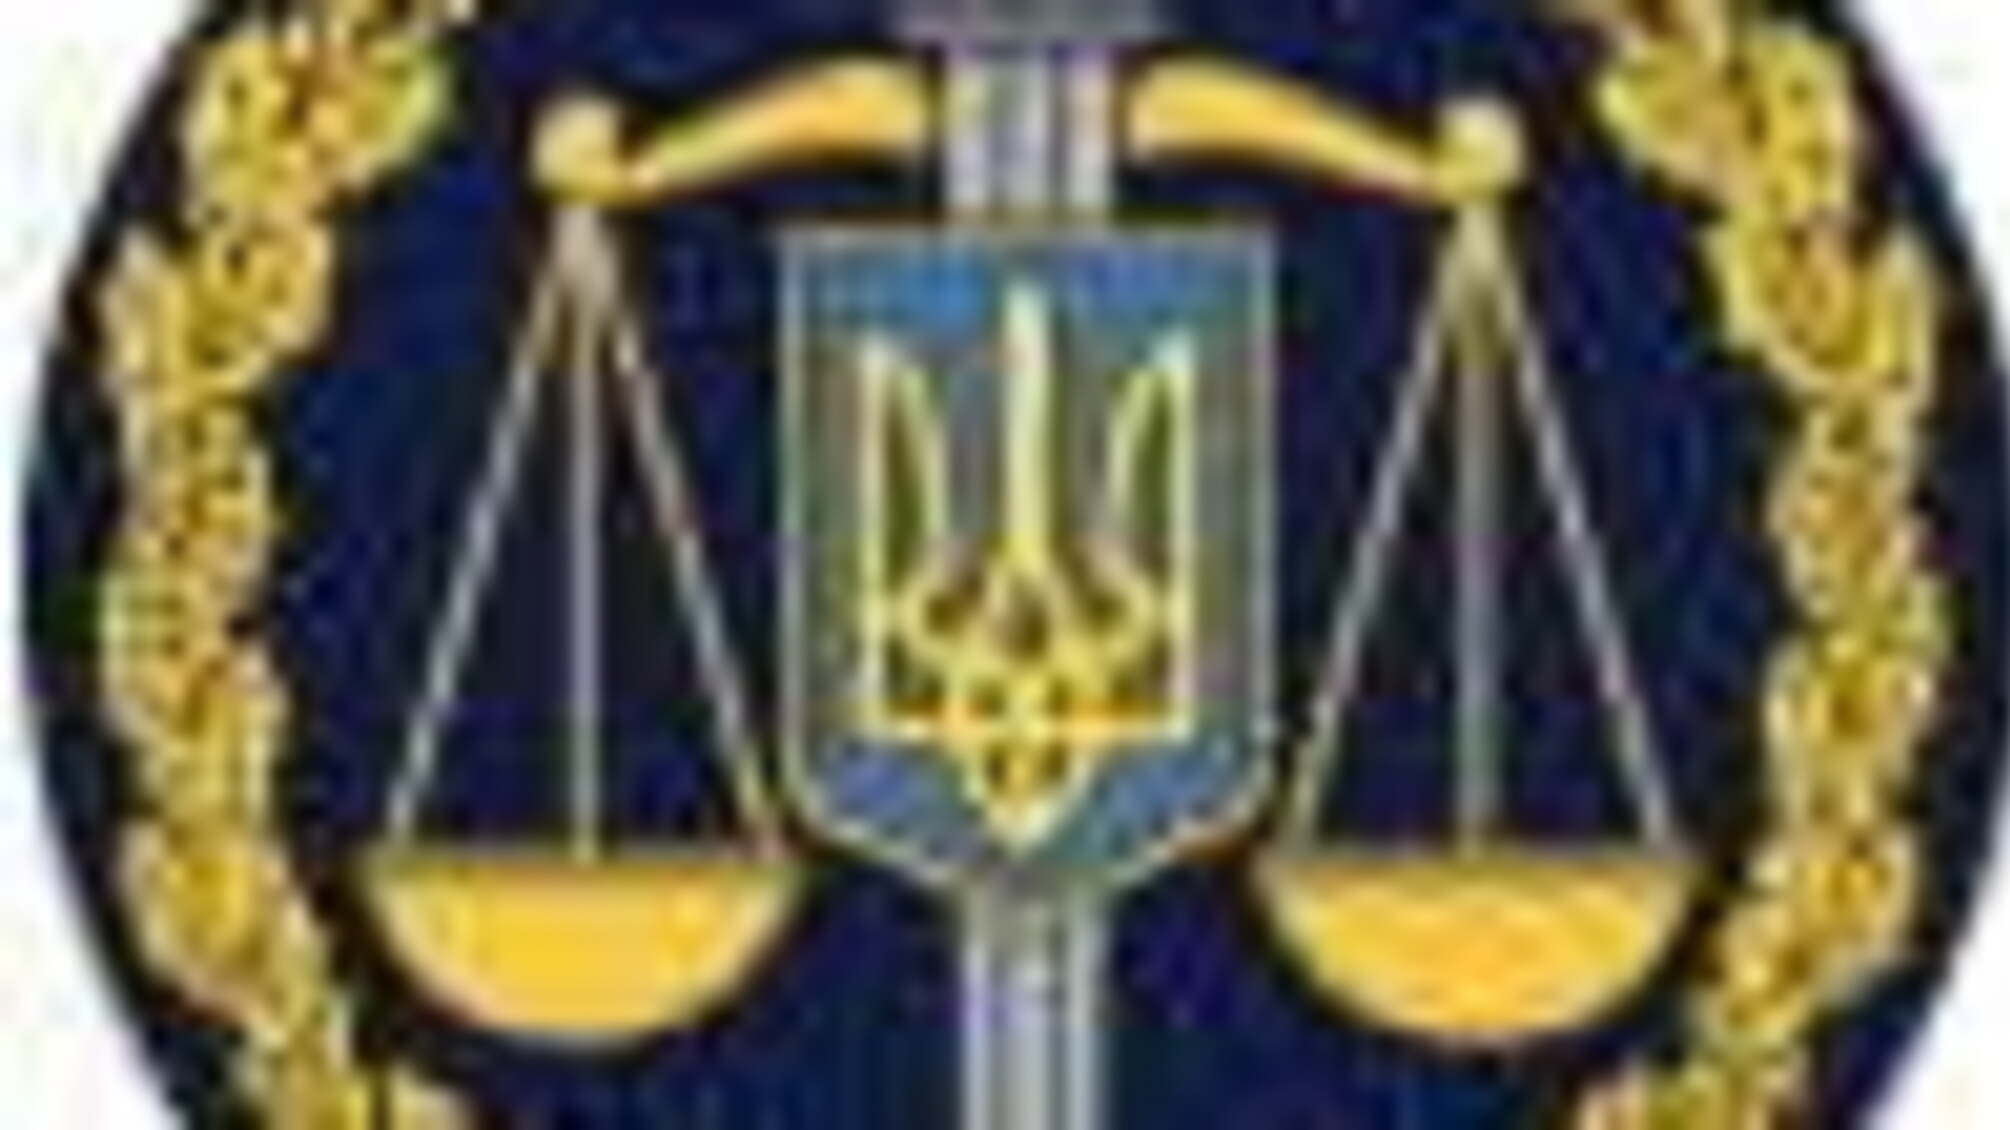 Керівництво прокуратури області привітало колектив Харківського науково-дослідного експертно-криміналістичного центру МВС з 20-річчям Експертної служби МВС